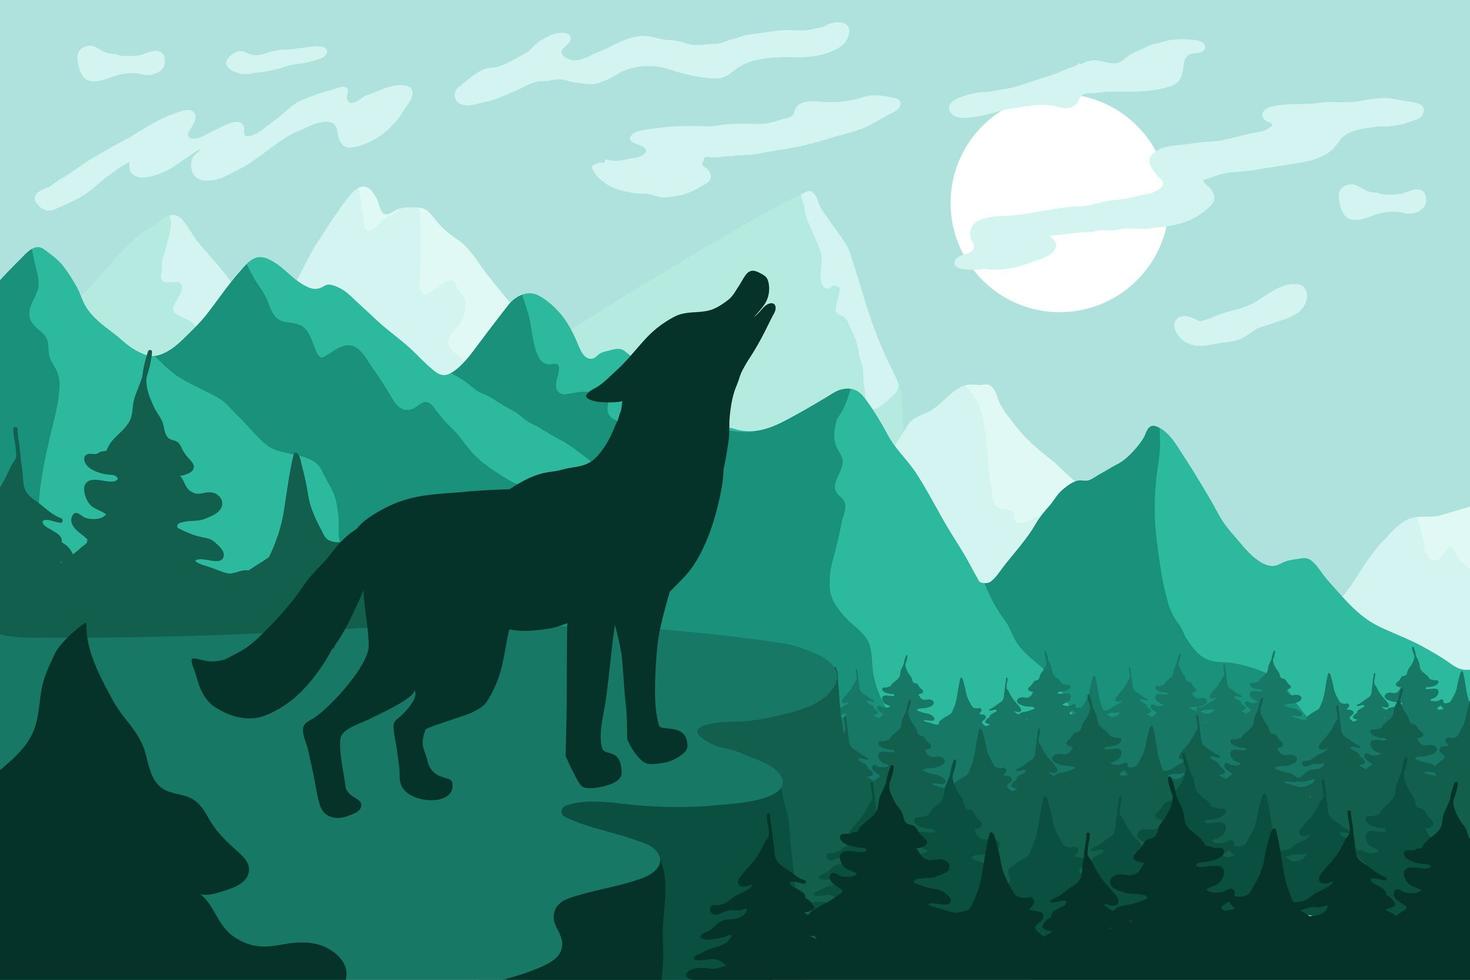 paisagem com ilustração em vetor plana silhueta de lobo